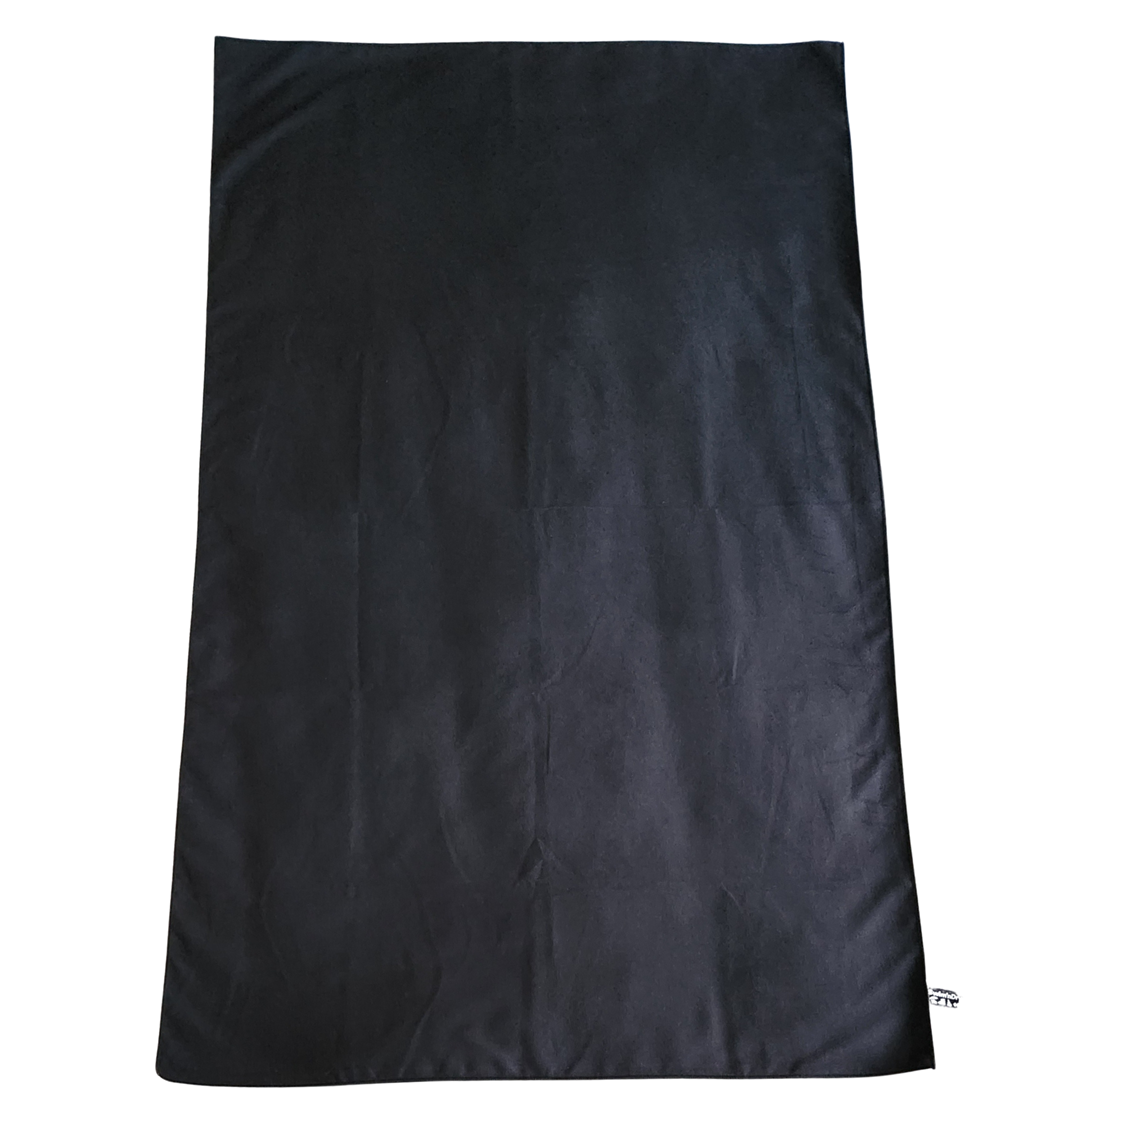 Adv towel black 0189 (1)